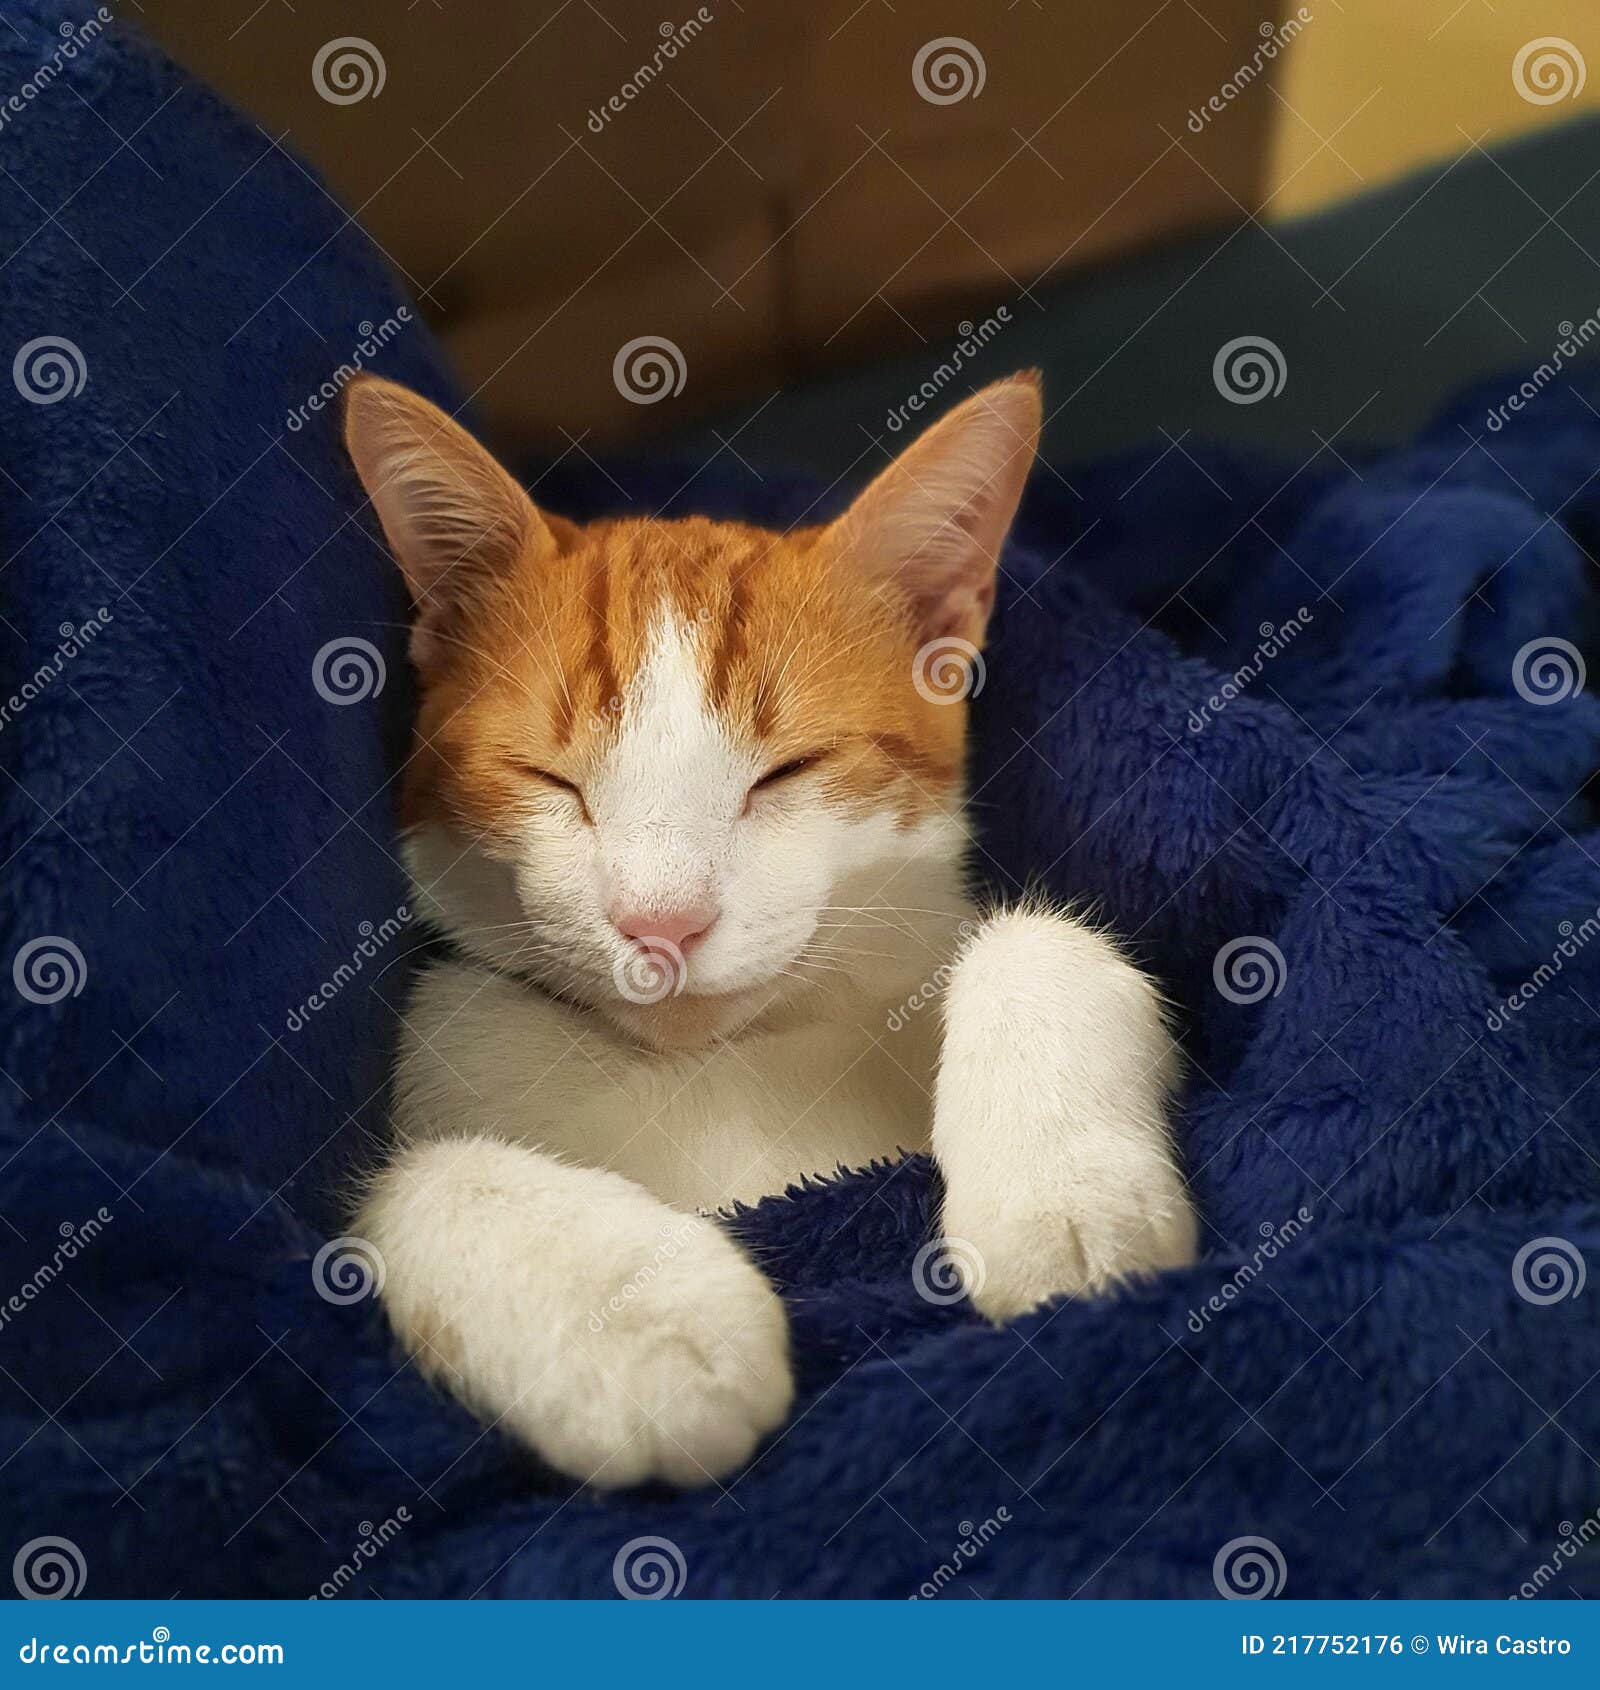 gato amarelo e branco dormindo em cobertores azuis em sono profundo